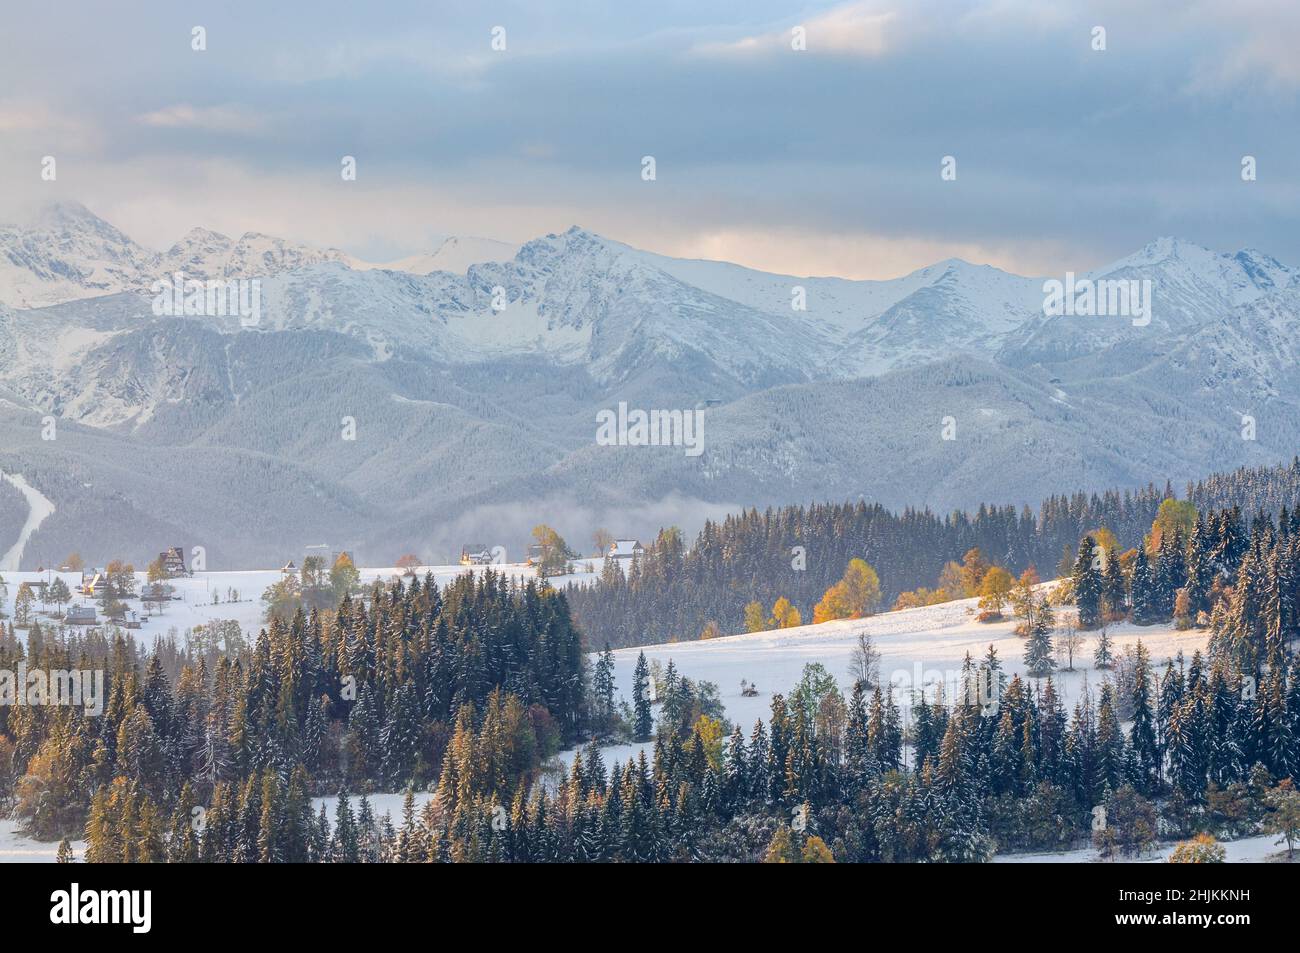 La première neige de Podhale.En arrière-plan, les sommets enneigés des Tatras (Swinica, Kasprowy Wierch et les Tatras occidentaux). Banque D'Images